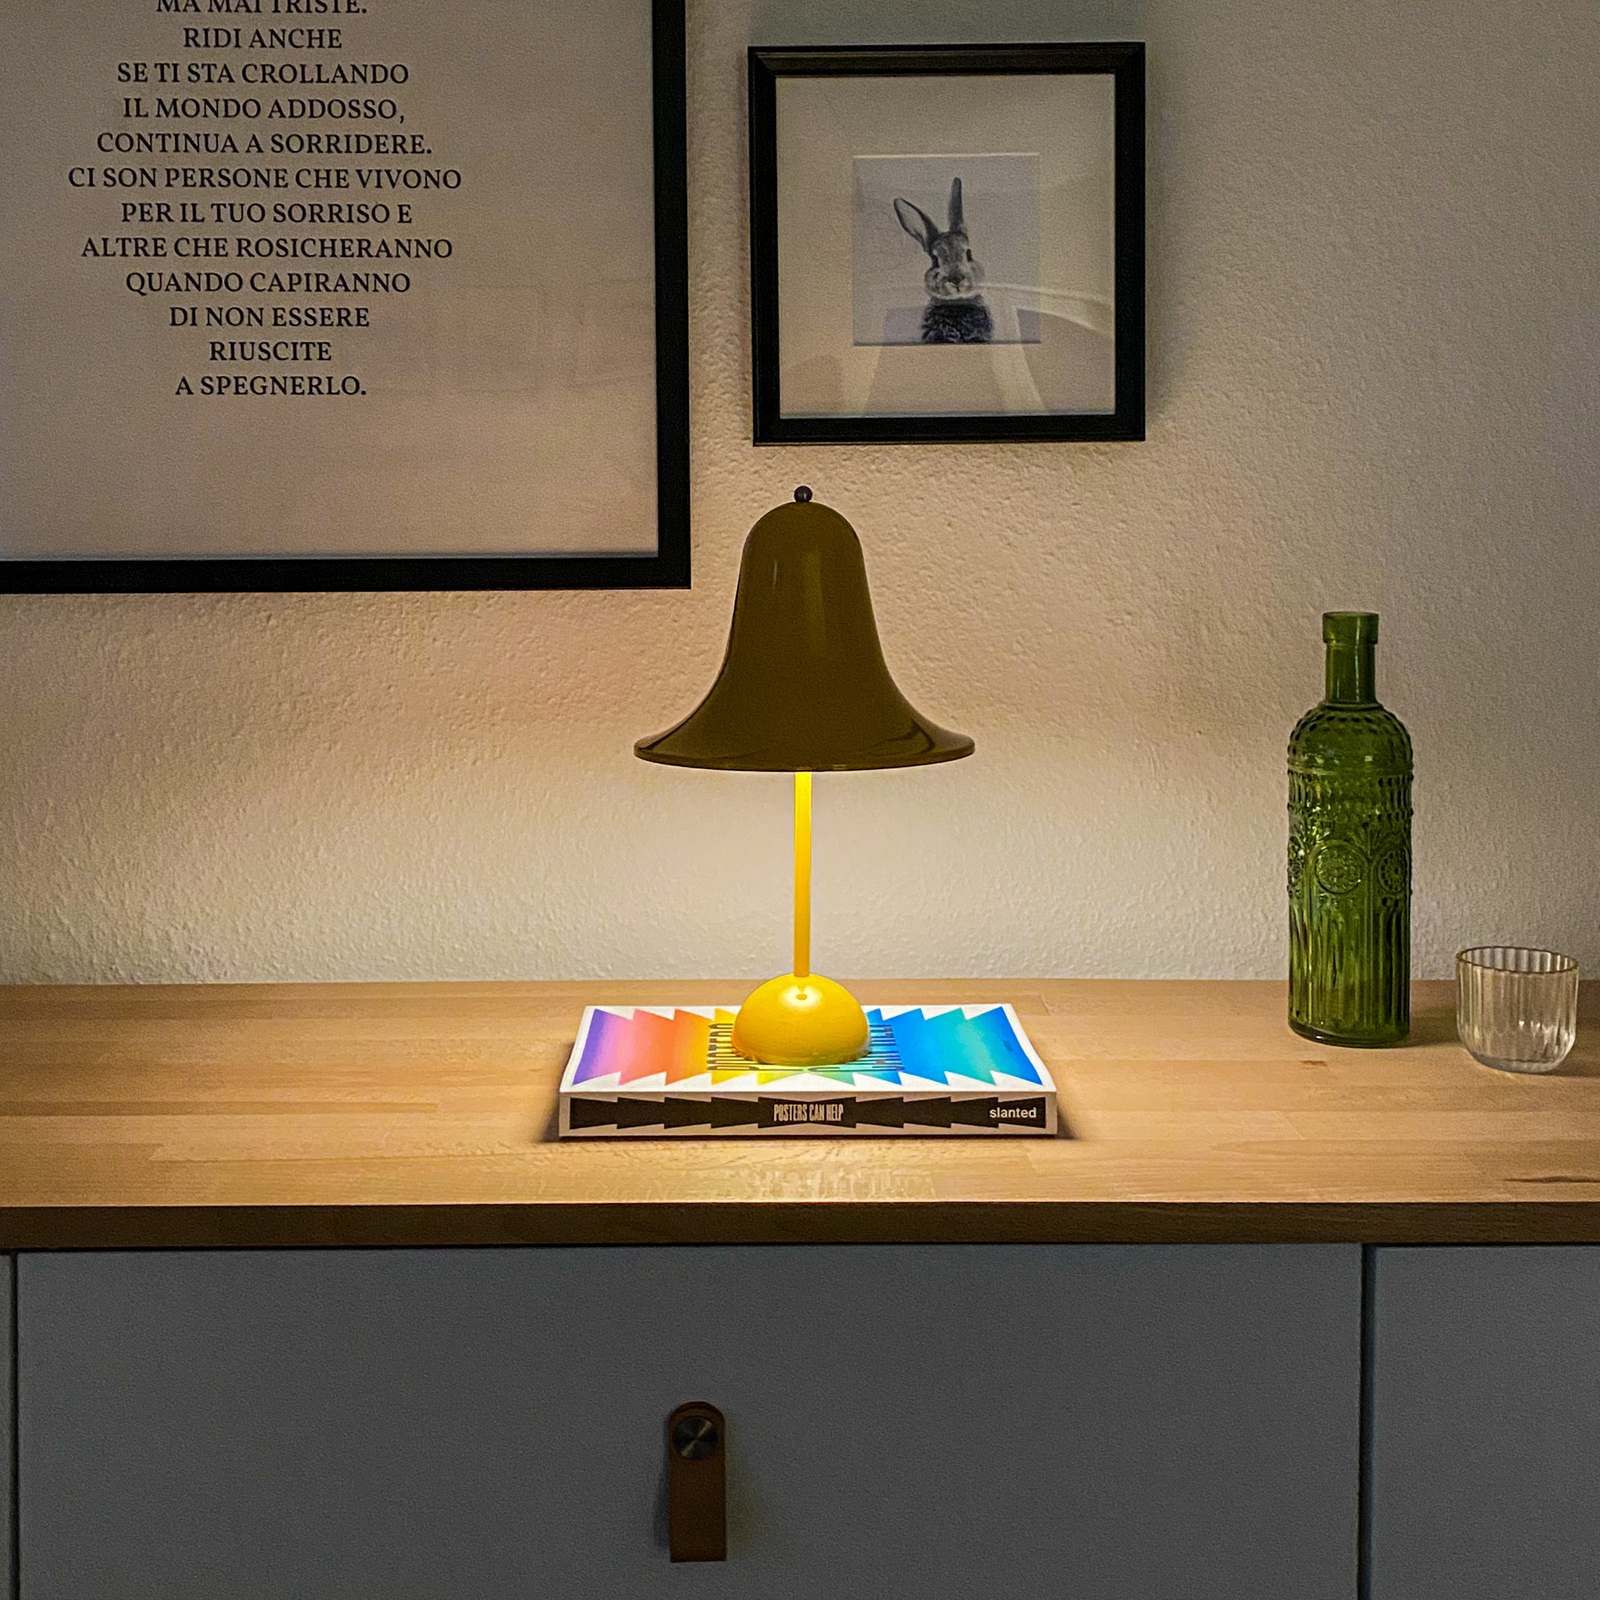 VERPAN Pantop stolová lampa teplá žltá